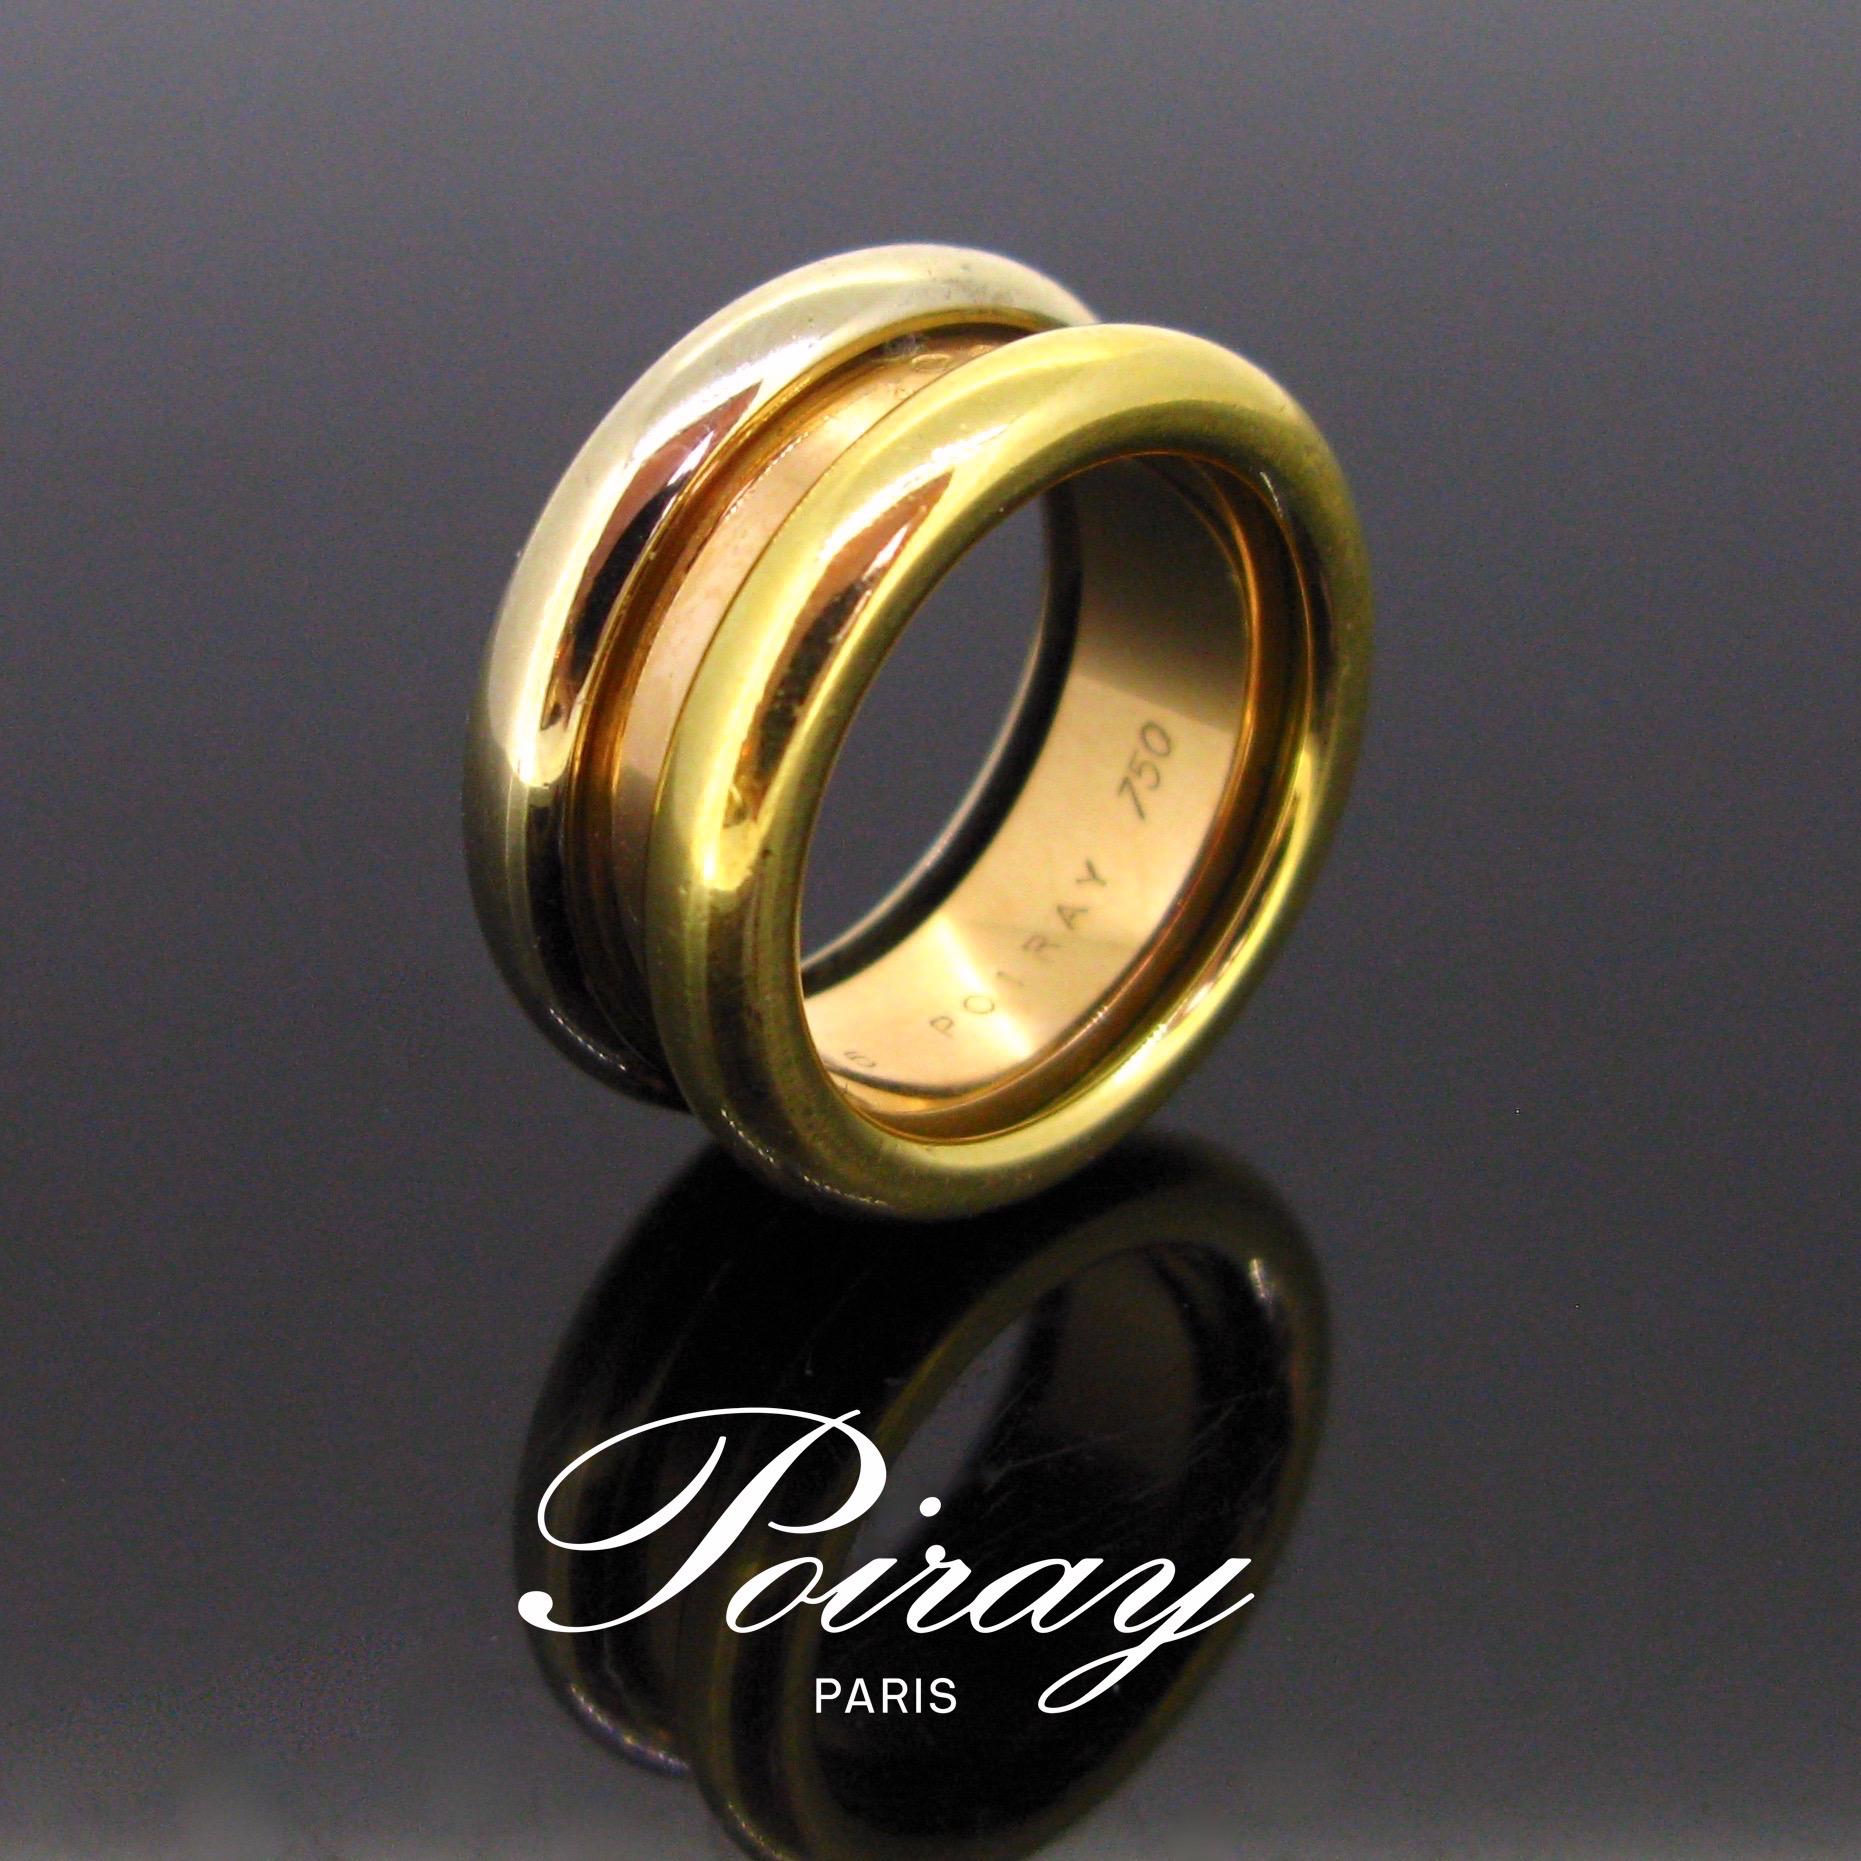 Dieser Ring ist mit Poiray signiert. Er ist aus 18-karätigem Gold in drei Farben gefertigt: Gelb, Rosa und Weiß. Das Gold ist glatt und glänzend. Es ist in sehr gutem Zustand. Er ist auf der Innenseite der Ringschiene signiert und nummeriert. Wir